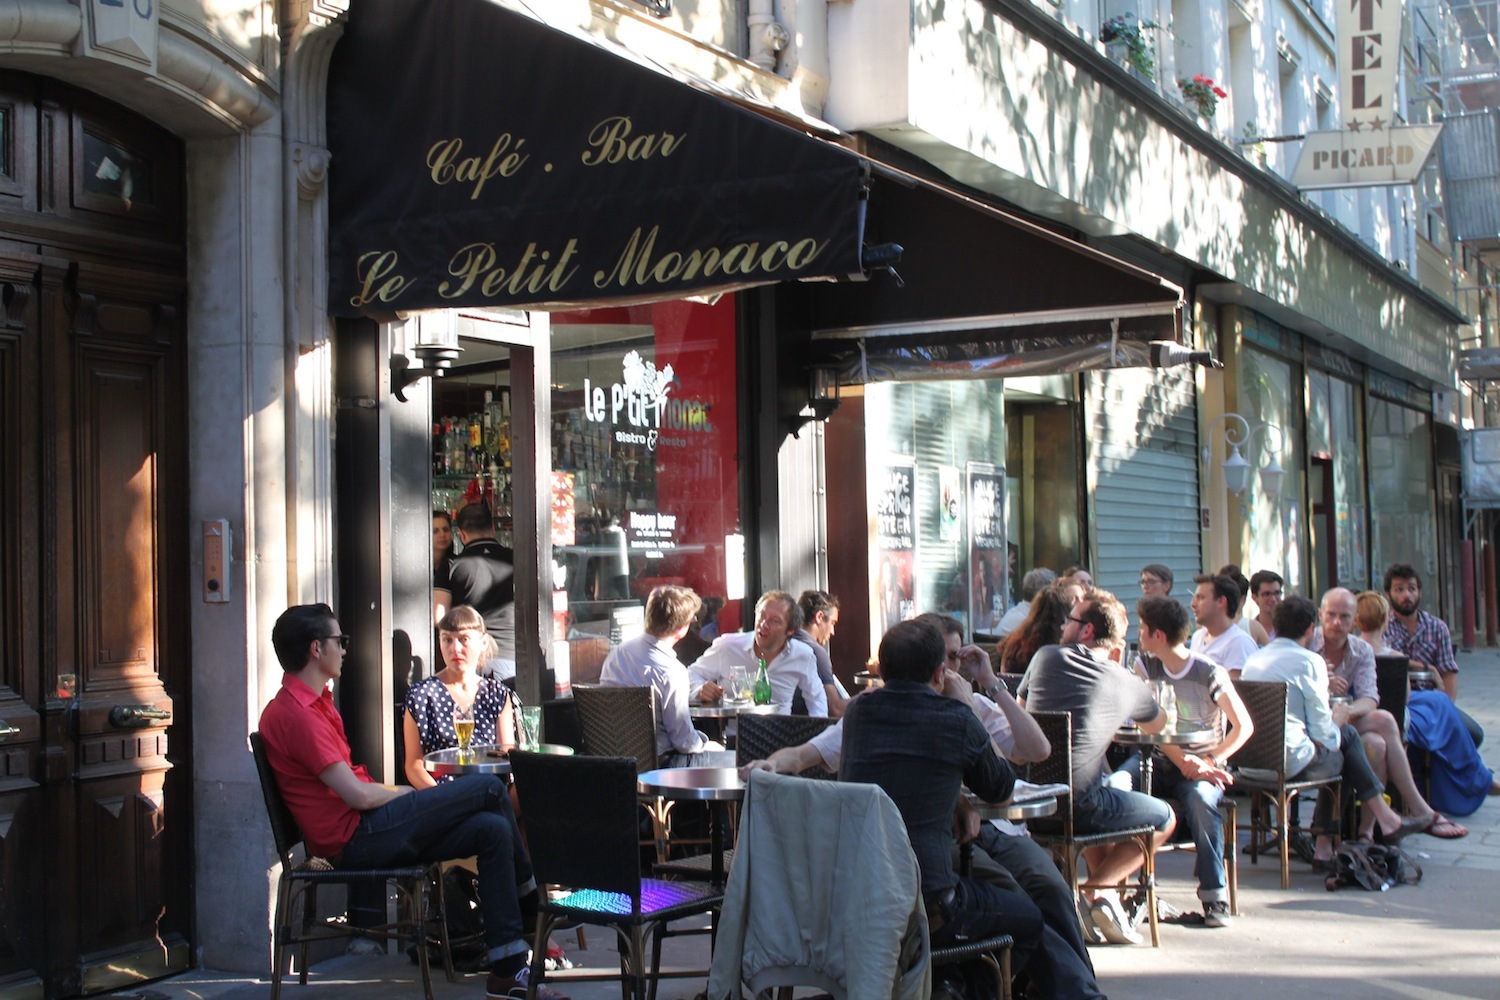 Le Petit Monaco | Bars and pubs in Le Marais, Paris